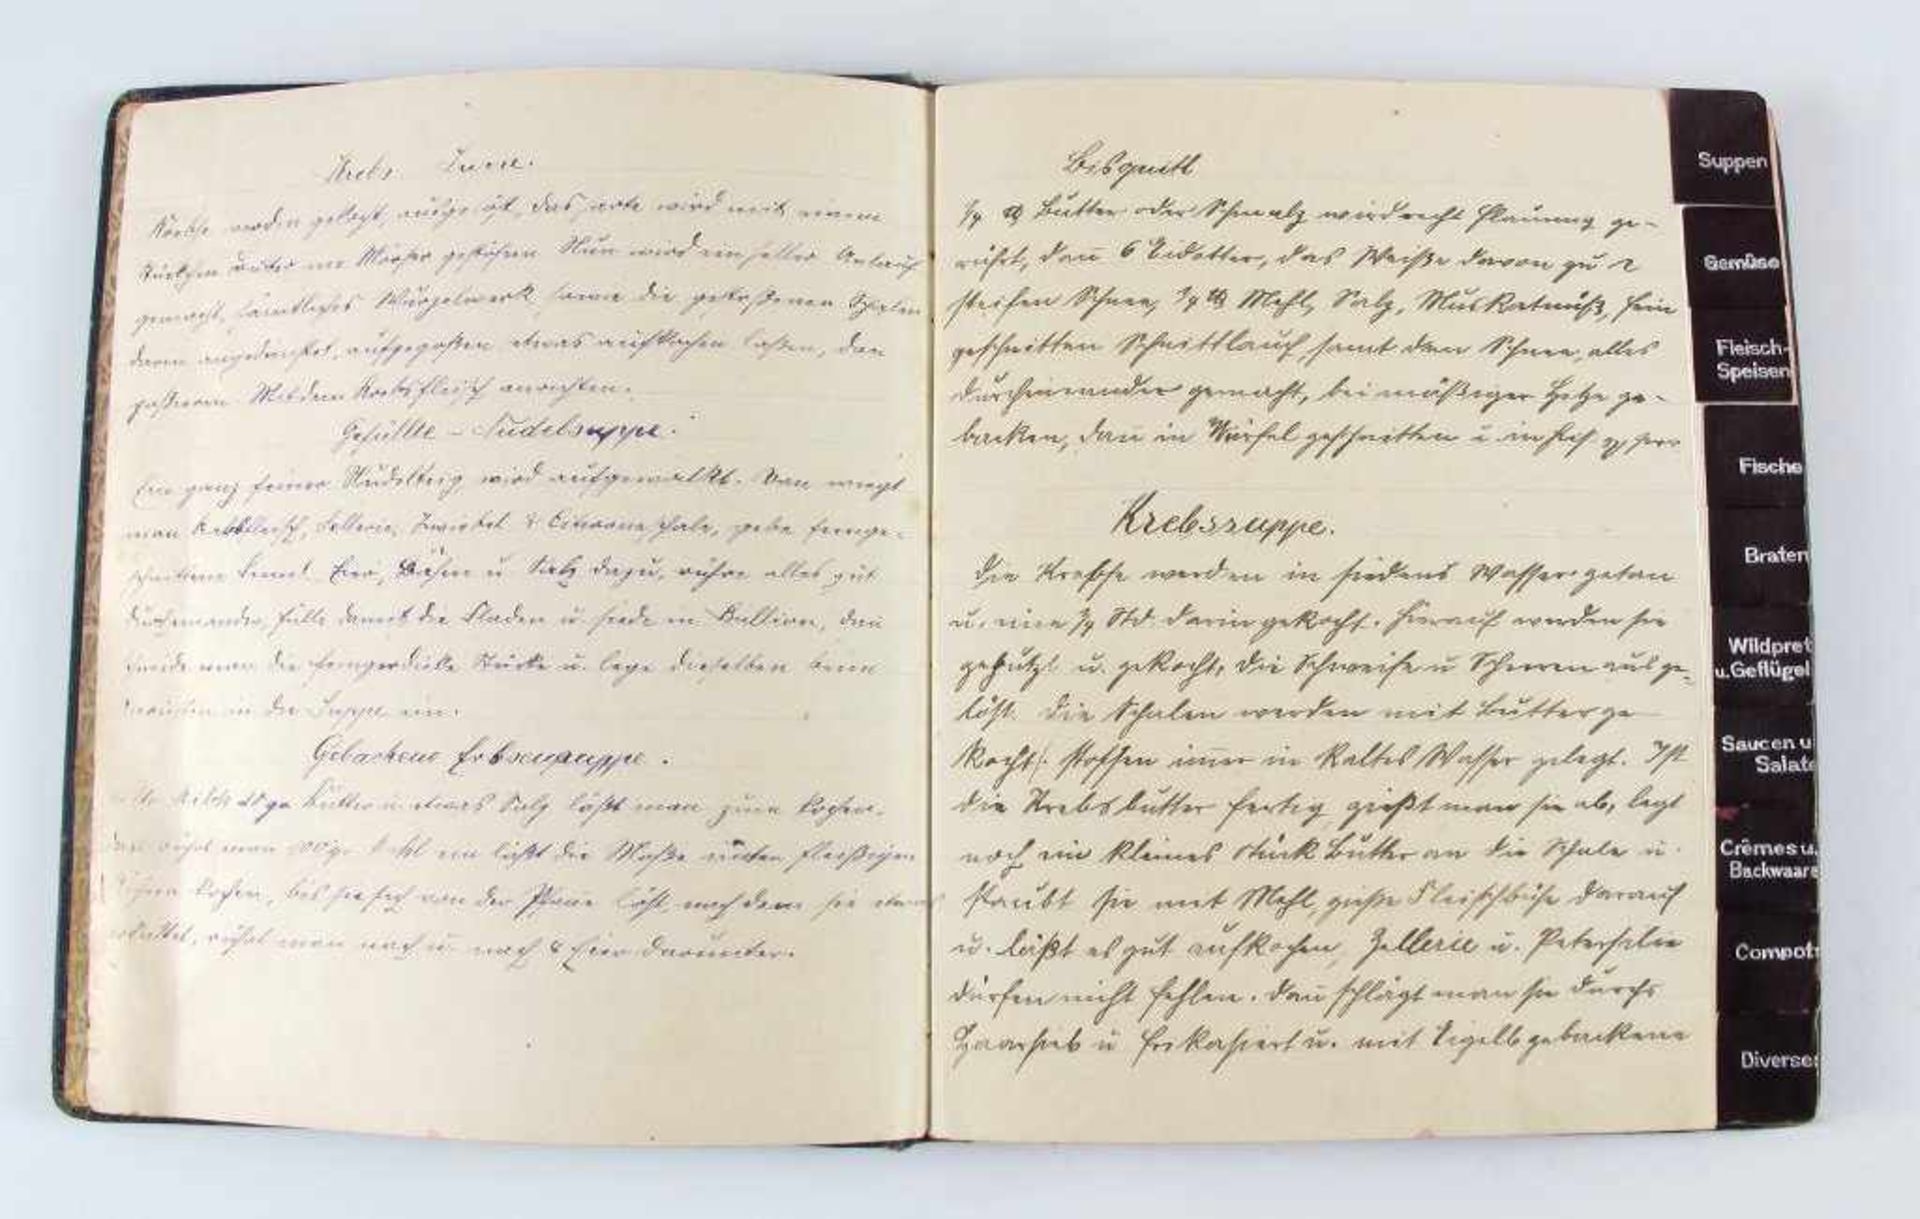 Kochbuch: Handschriftliches Kochbuch mit Einträgen u.a. zu Suppen, Fleischspeisen, Braten, Saucen